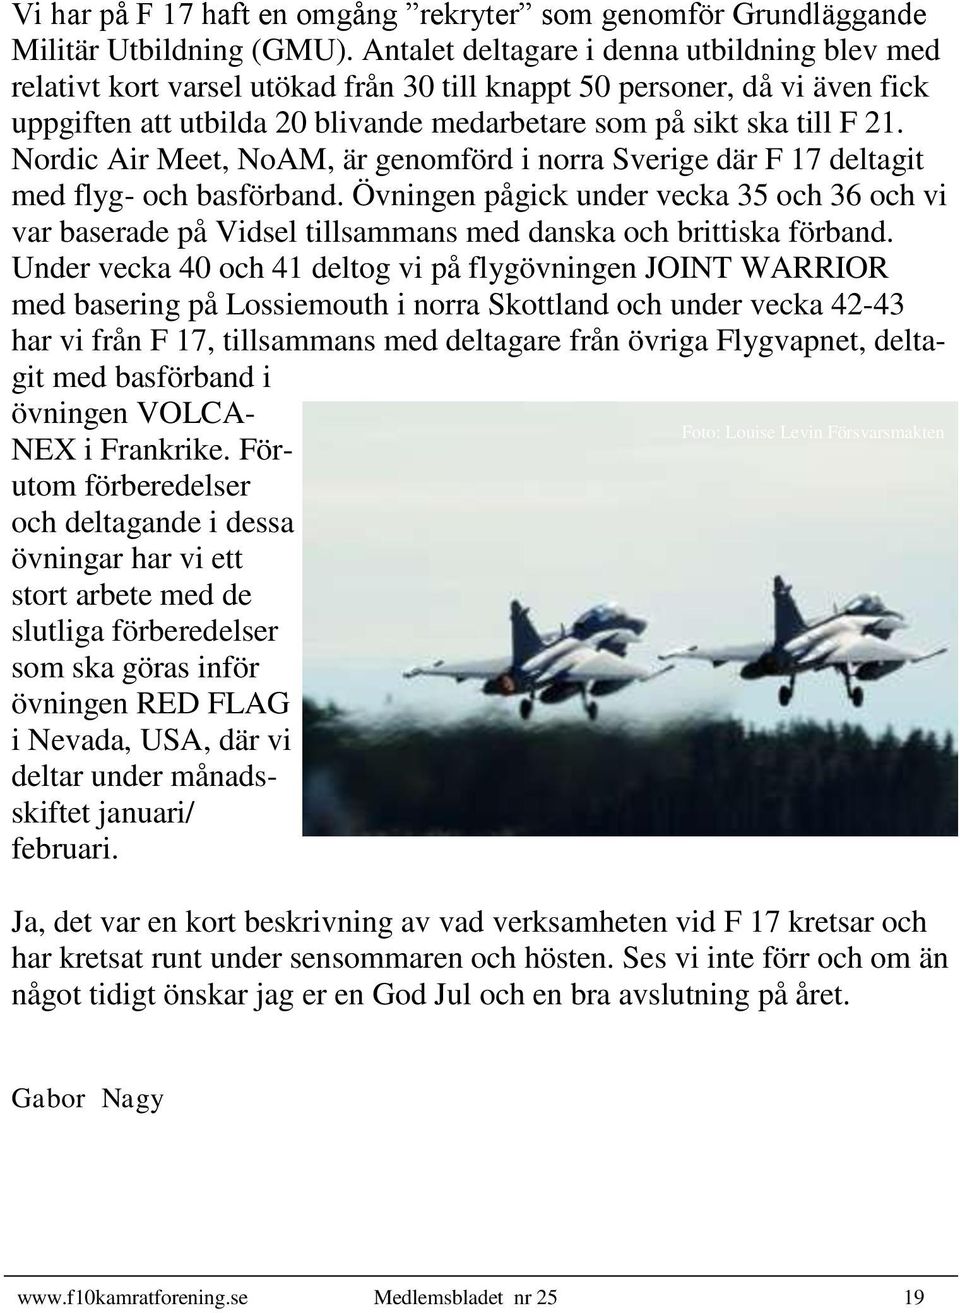 Nordic Air Meet, NoAM, är genomförd i norra Sverige där F 17 deltagit med flyg- och basförband.